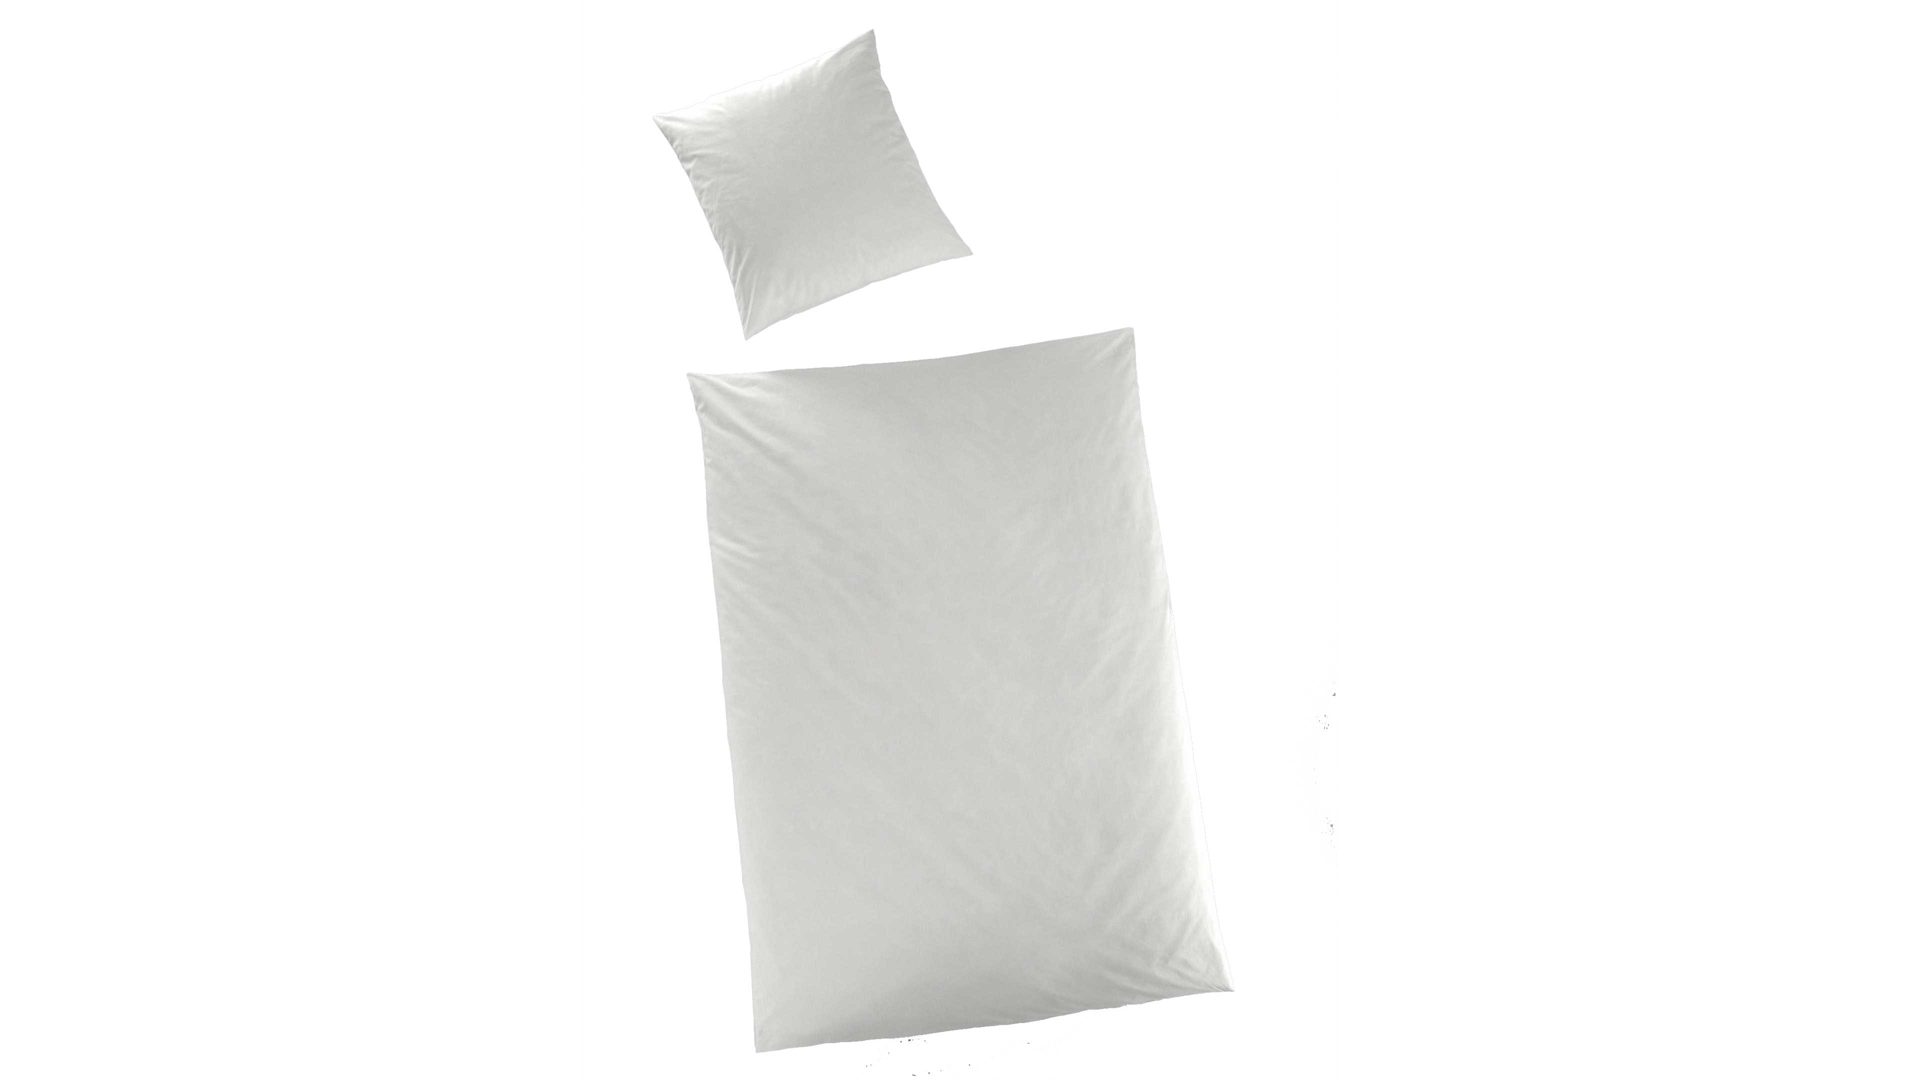 Bettwäsche-Set H.g. hahn haustextilien aus Stoff in Weiß HAHN Luxus-Satin-Bettwäsche Sempre weißer Baumwollsatin - zweiteilig, ca. 155 x 220 cm